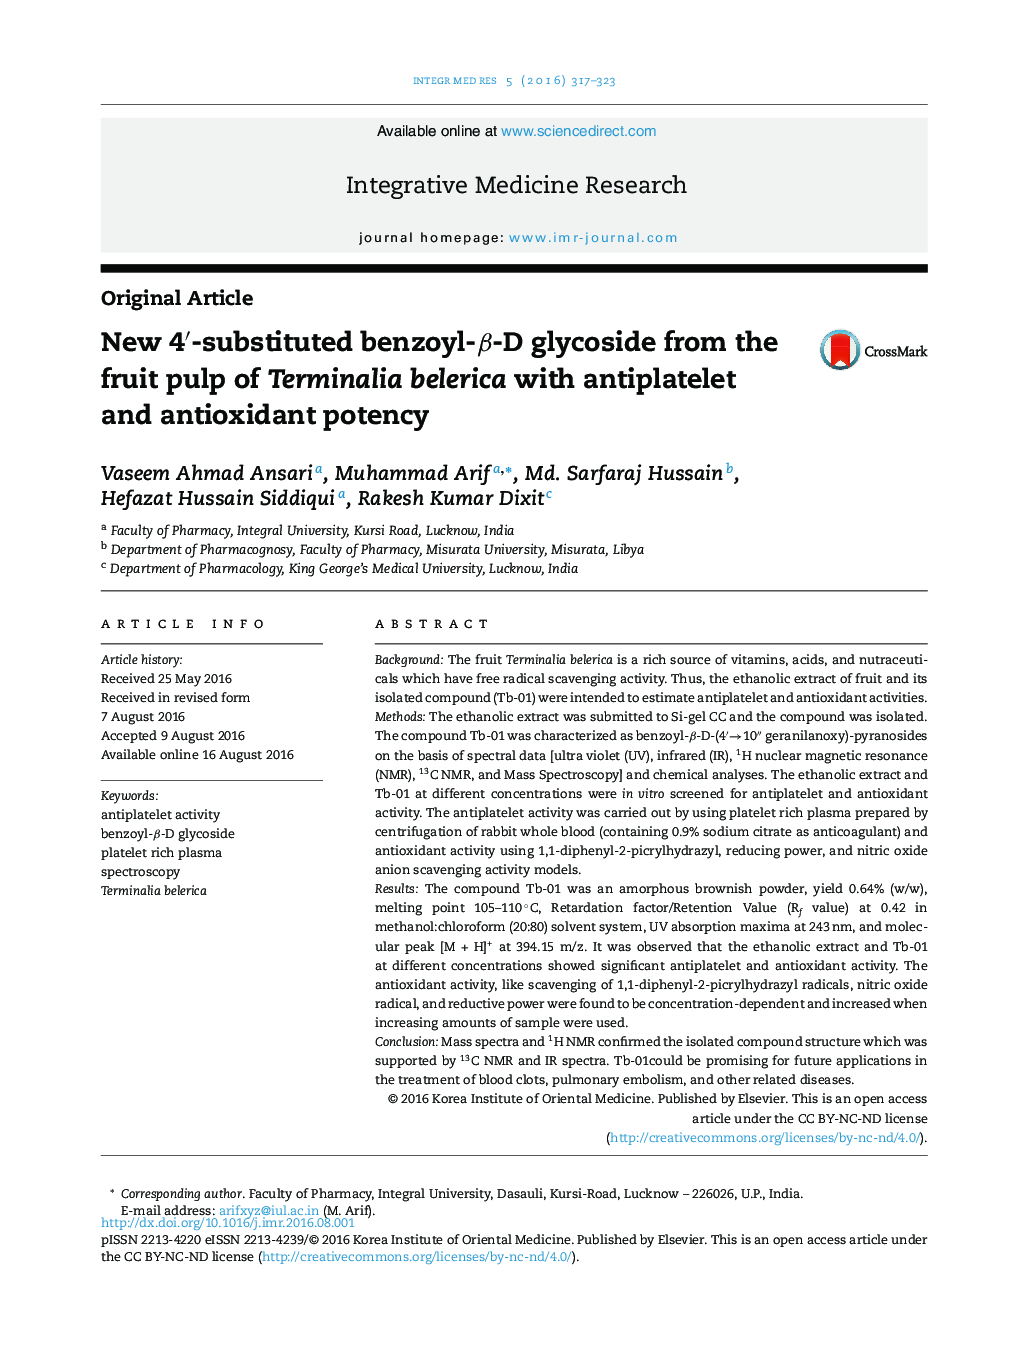 New 4â²-substituted benzoyl-Î²-D glycoside from the fruit pulp of Terminalia belerica with antiplatelet and antioxidant potency